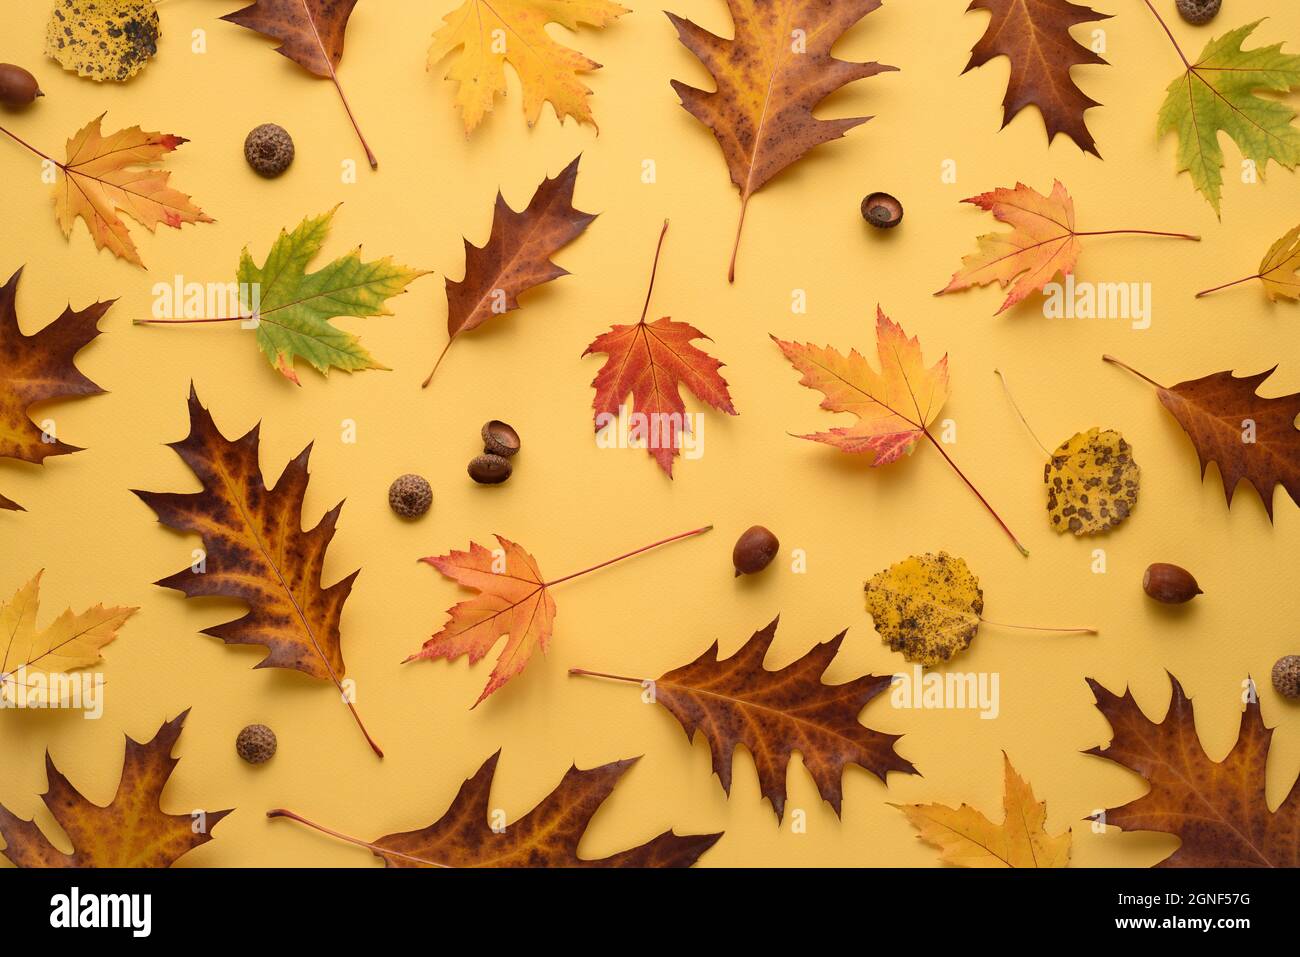 Motif d'automne des feuilles mortes sur fond jaune Banque D'Images